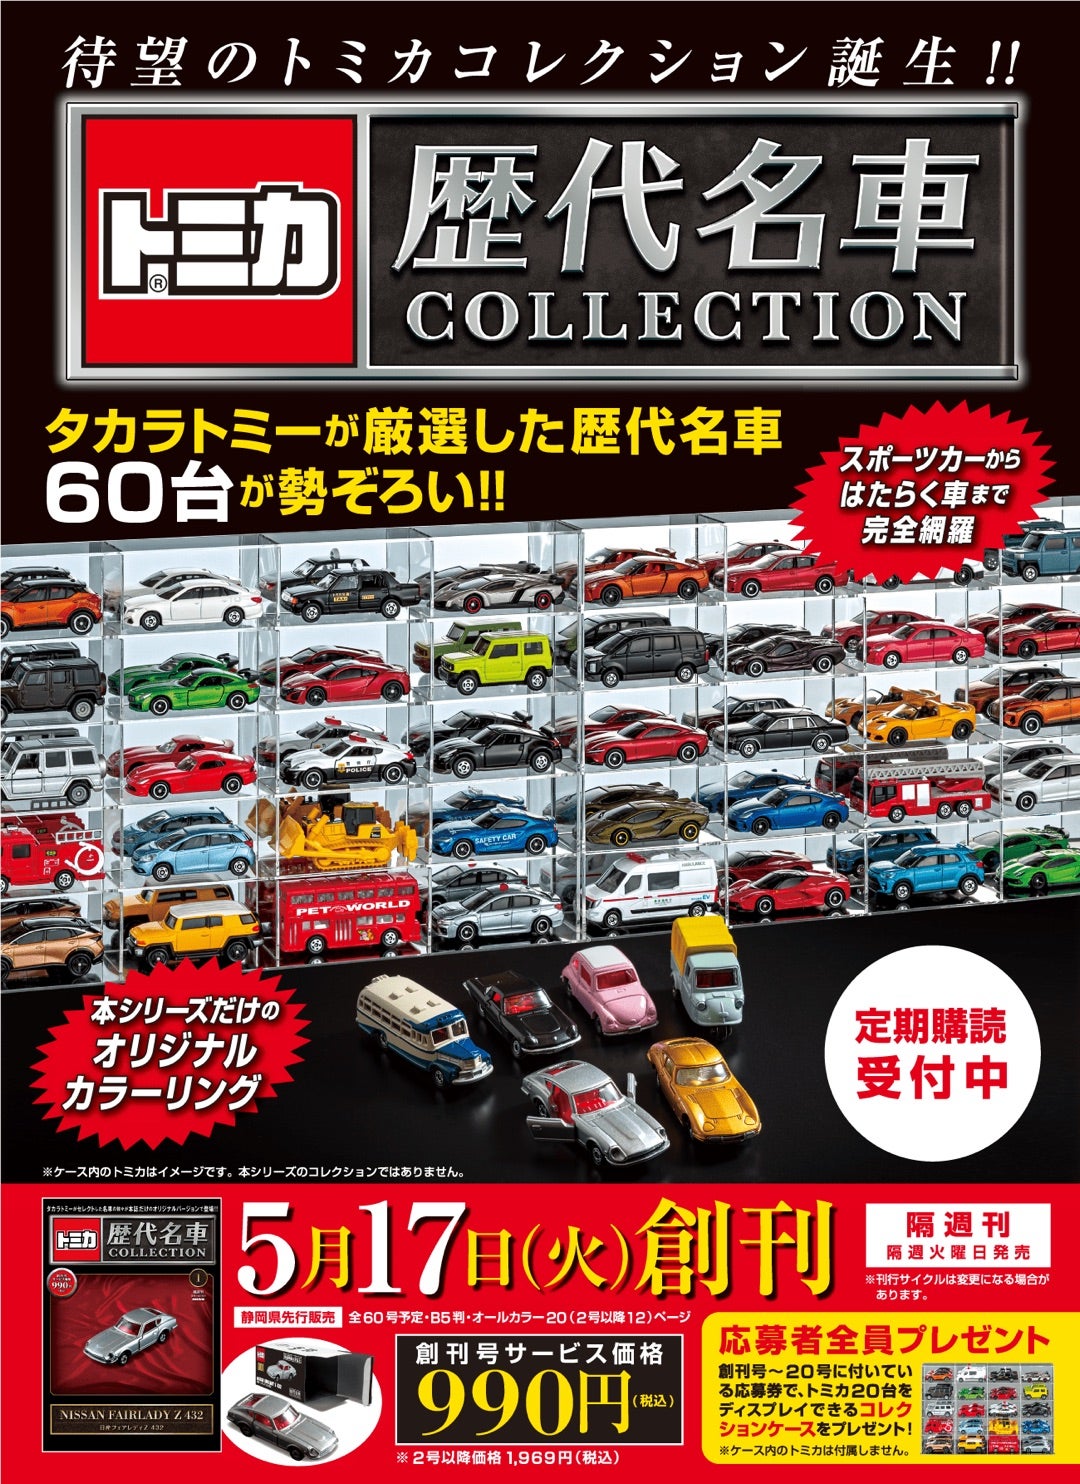 トミカ 歴代名車コレクション | 超快速やまやのブログ